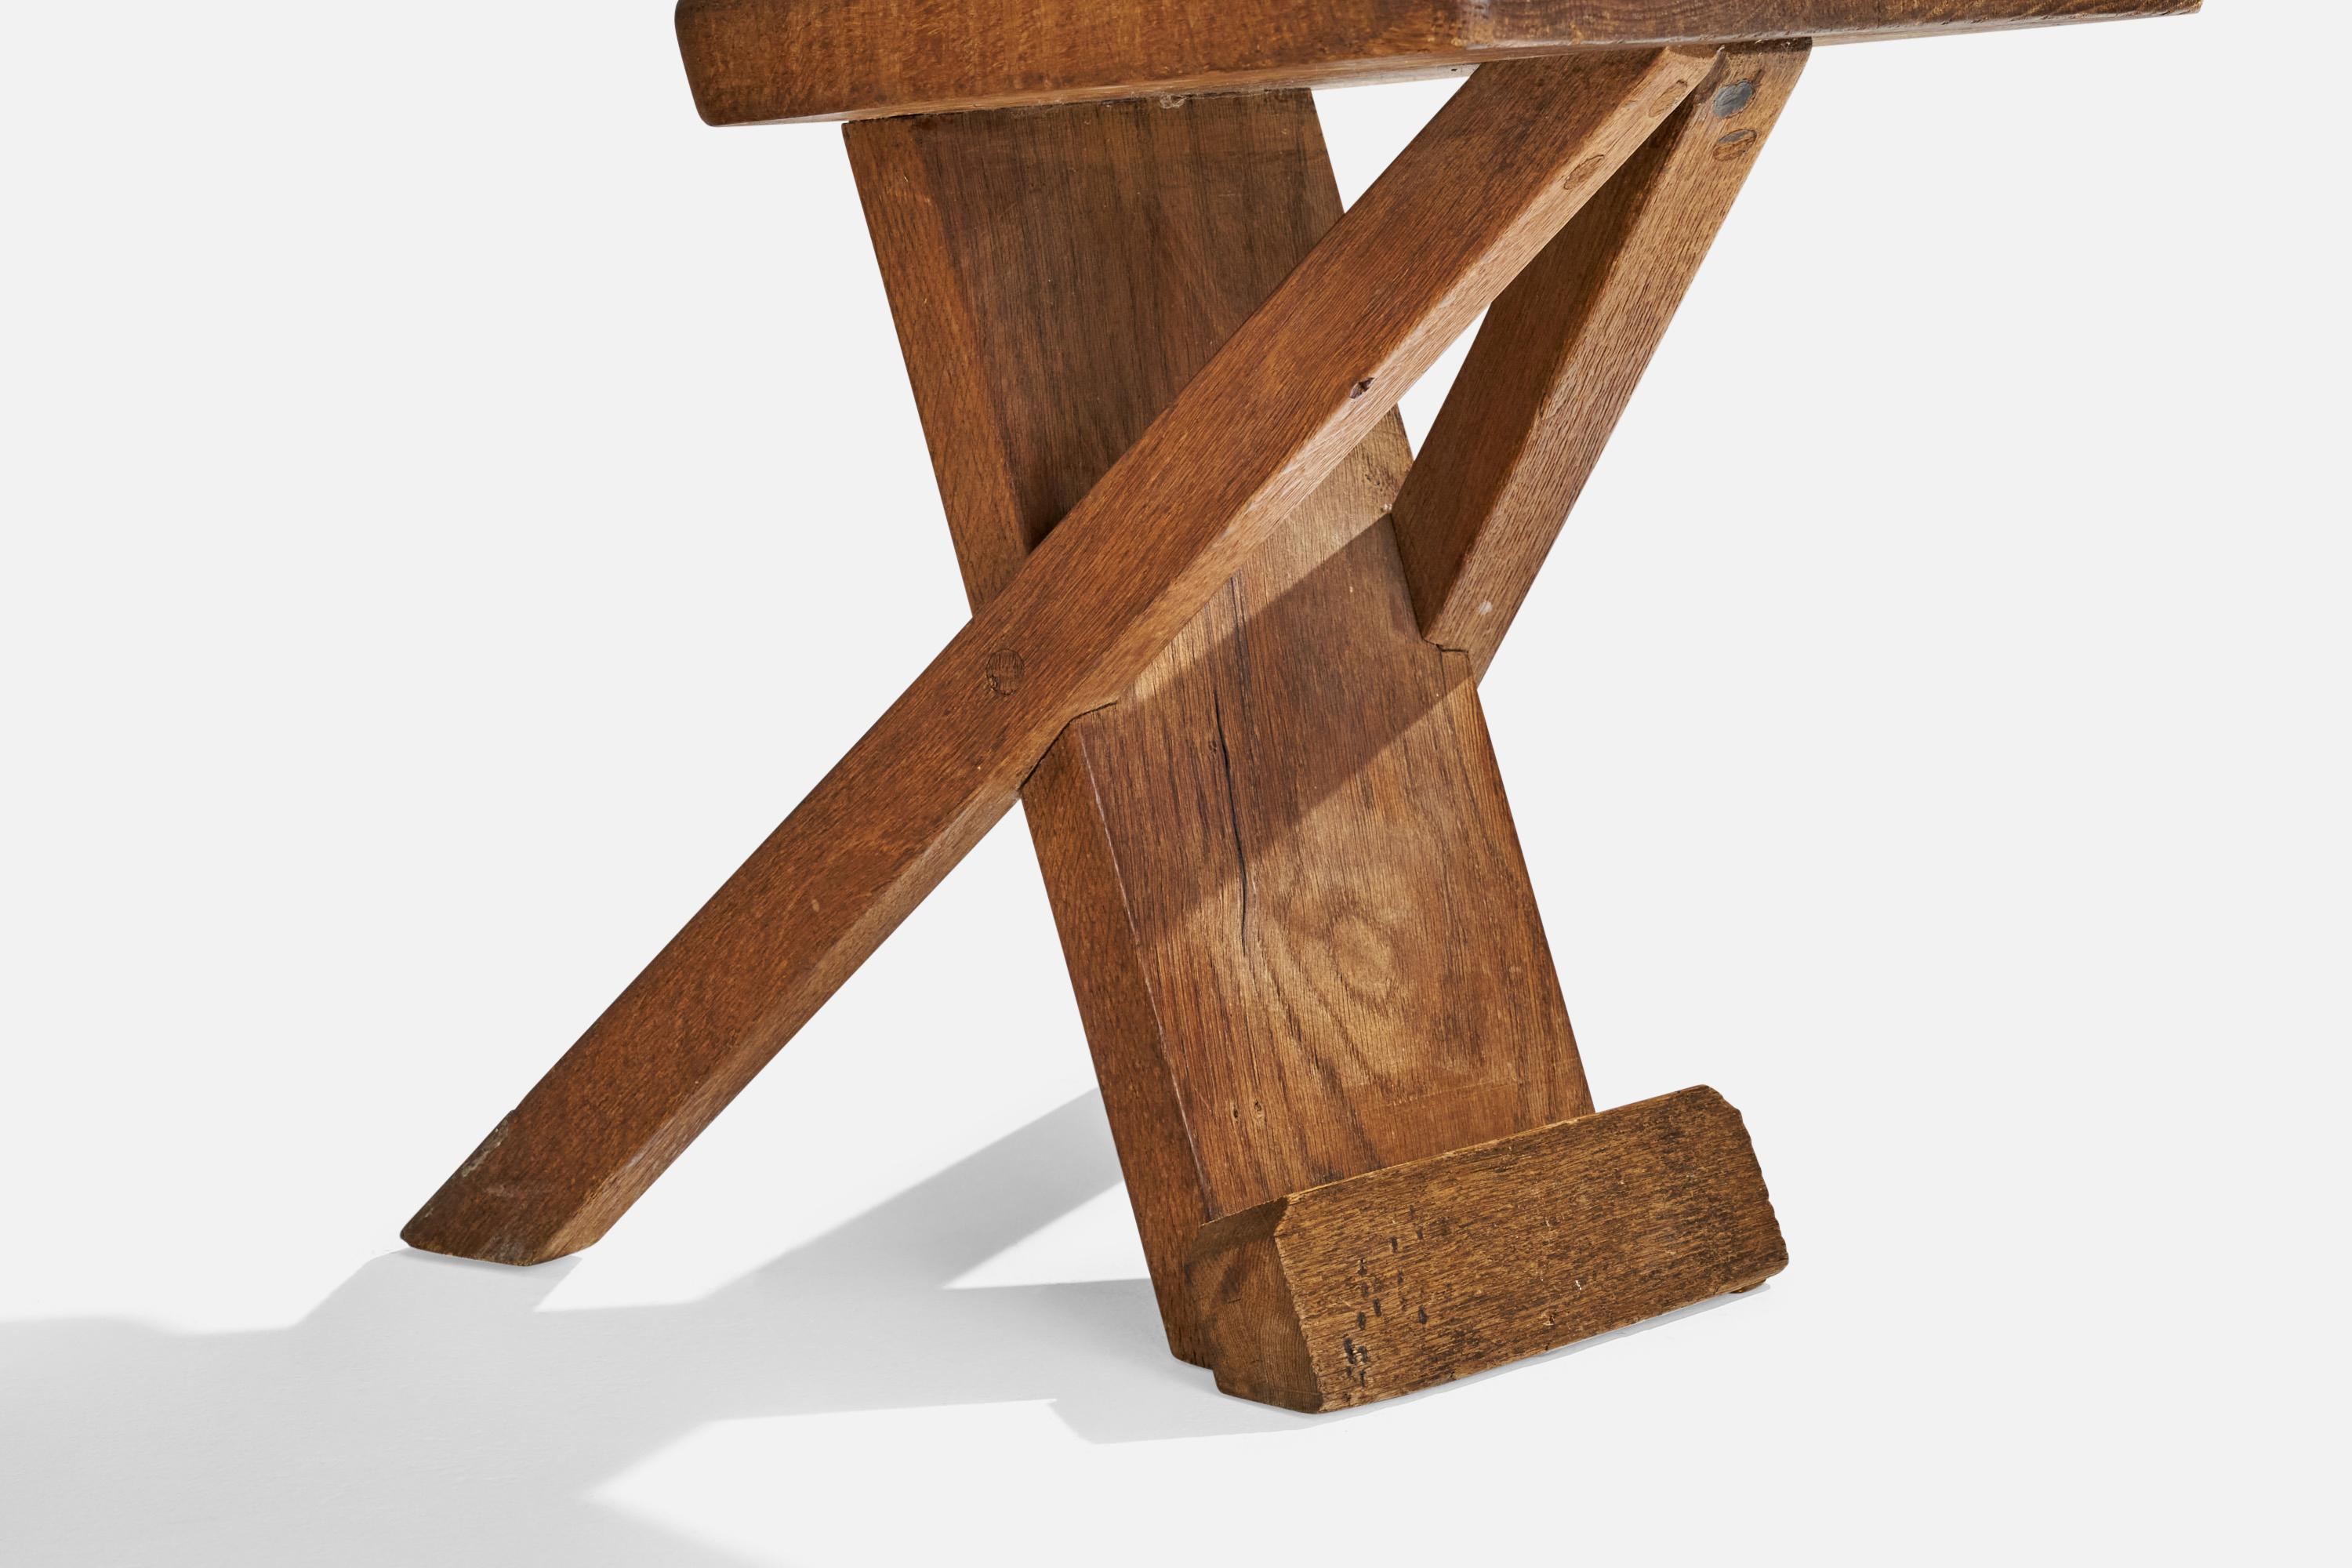 Danish Designer, Side Chairs, Oak, Denmark, 1920s For Sale 5